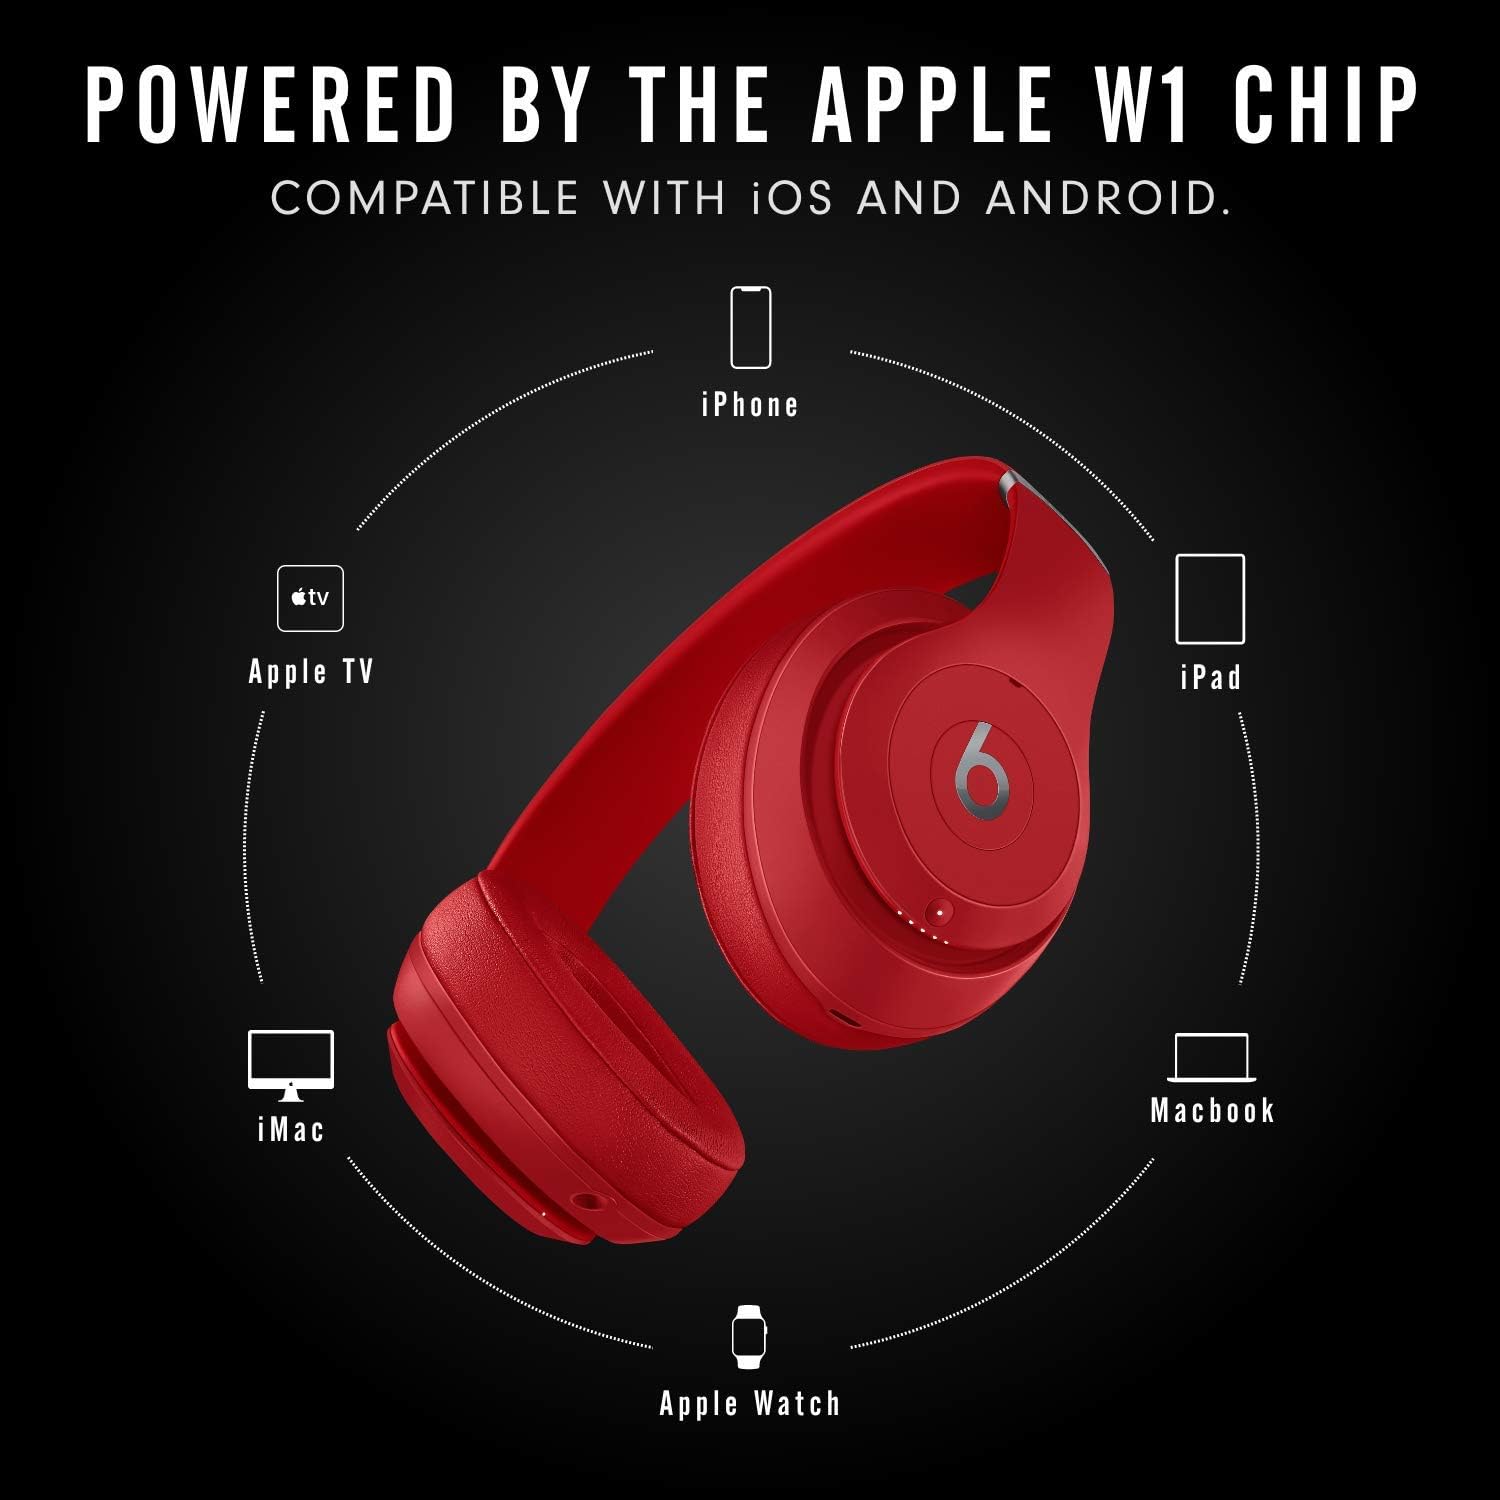 Beats Studio3 Wireless Over‑Ear Headphones Red